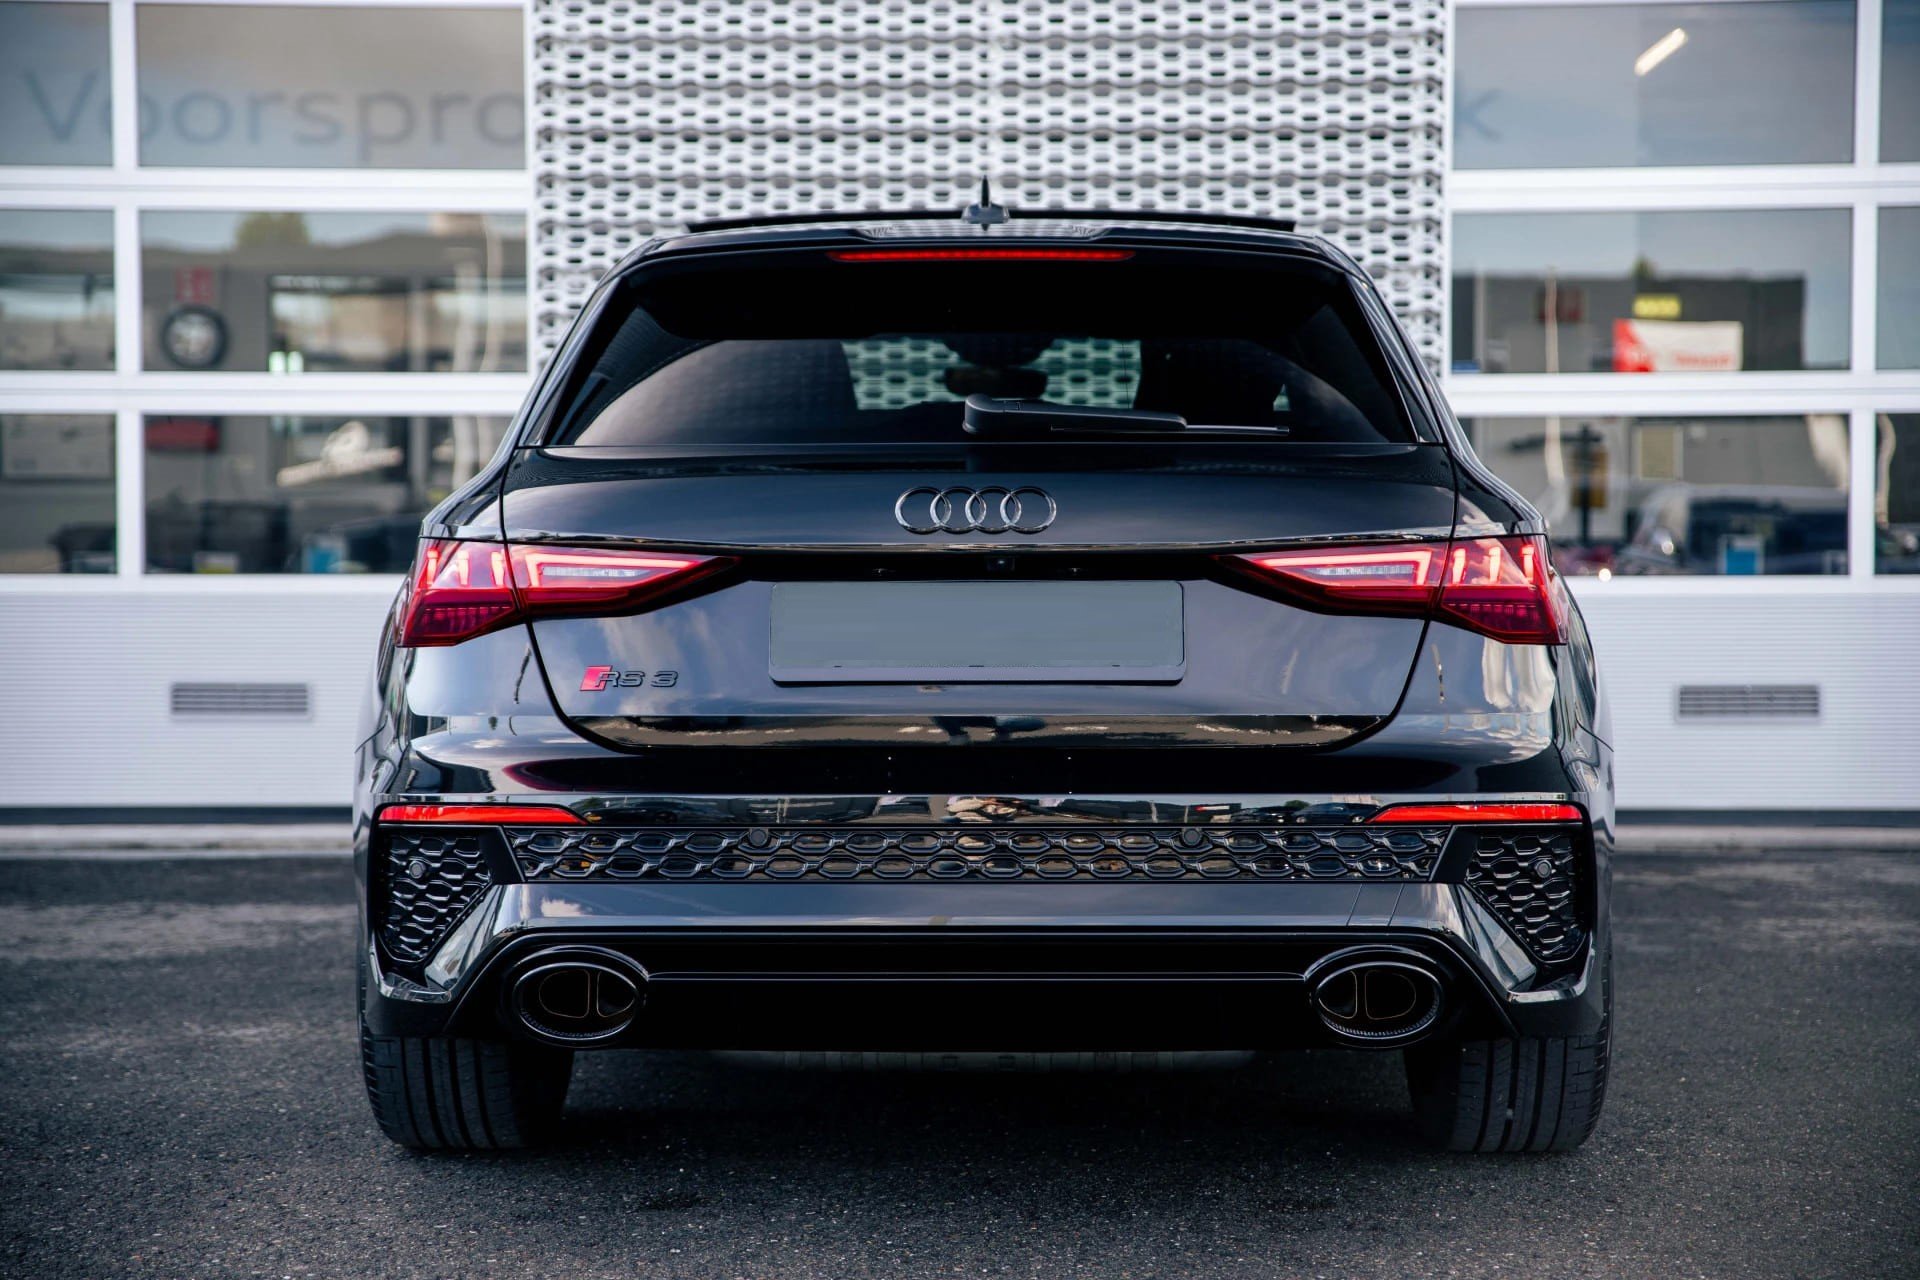 Location longue durée d'occasion Audi RS3 Sportback TFSI écotaxe et malus  inclus dès 1 477€ / mois — Joinsteer